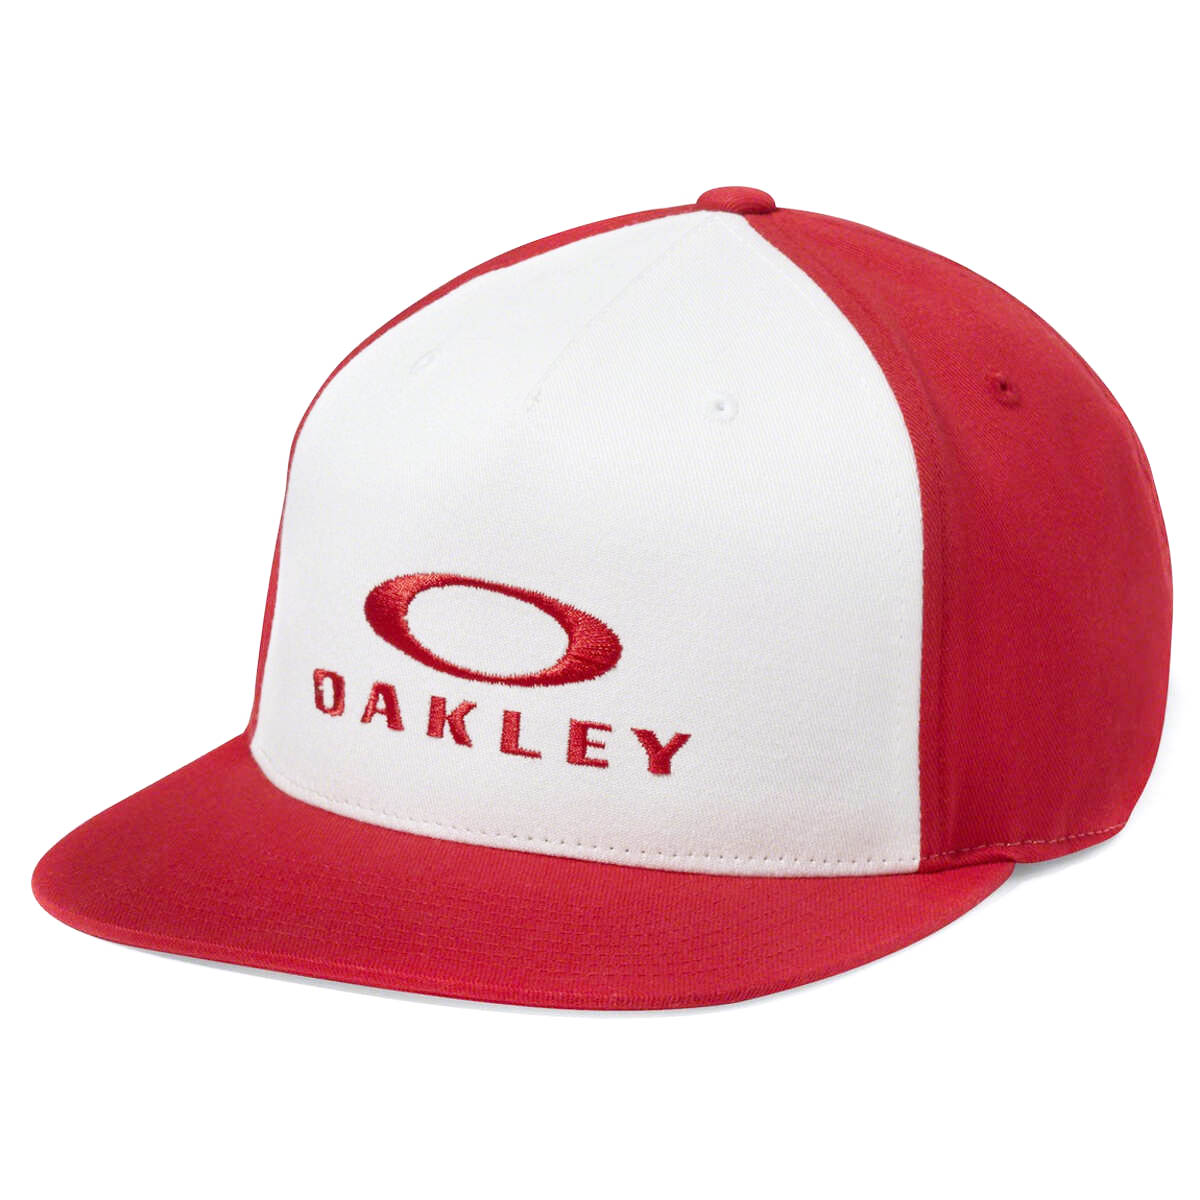 Oakley Flexfit Cap Sliver 110 Red Line